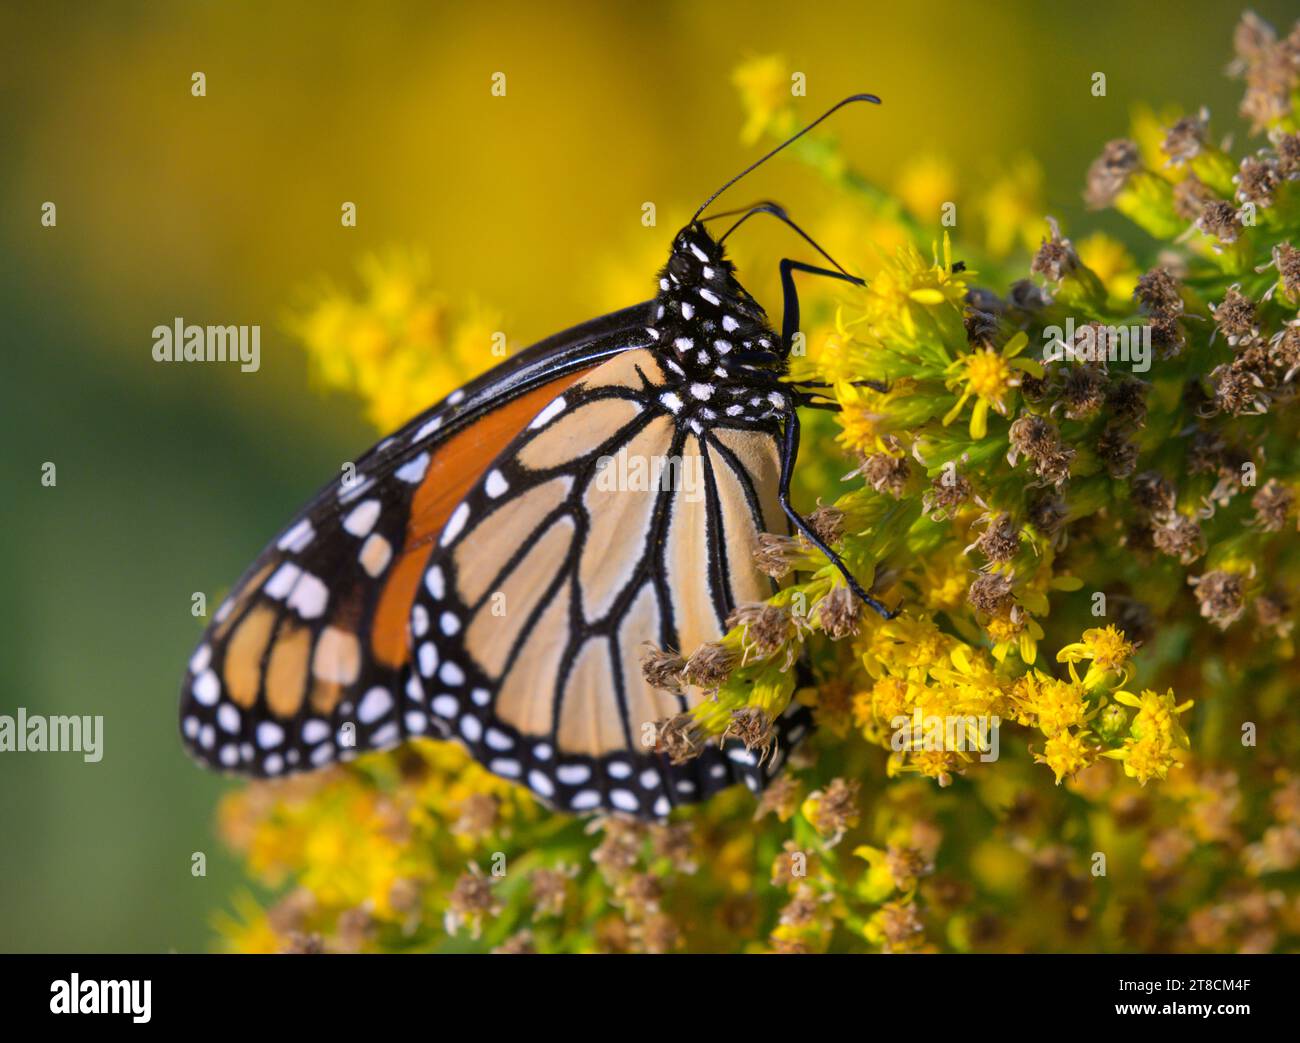 La farfalla monarca (Danaus plexippus) si nutre di fiori di goldenrod (Solidago sempervirens) durante la fioritura autunnale, Galveston, Texas, USA. Foto Stock